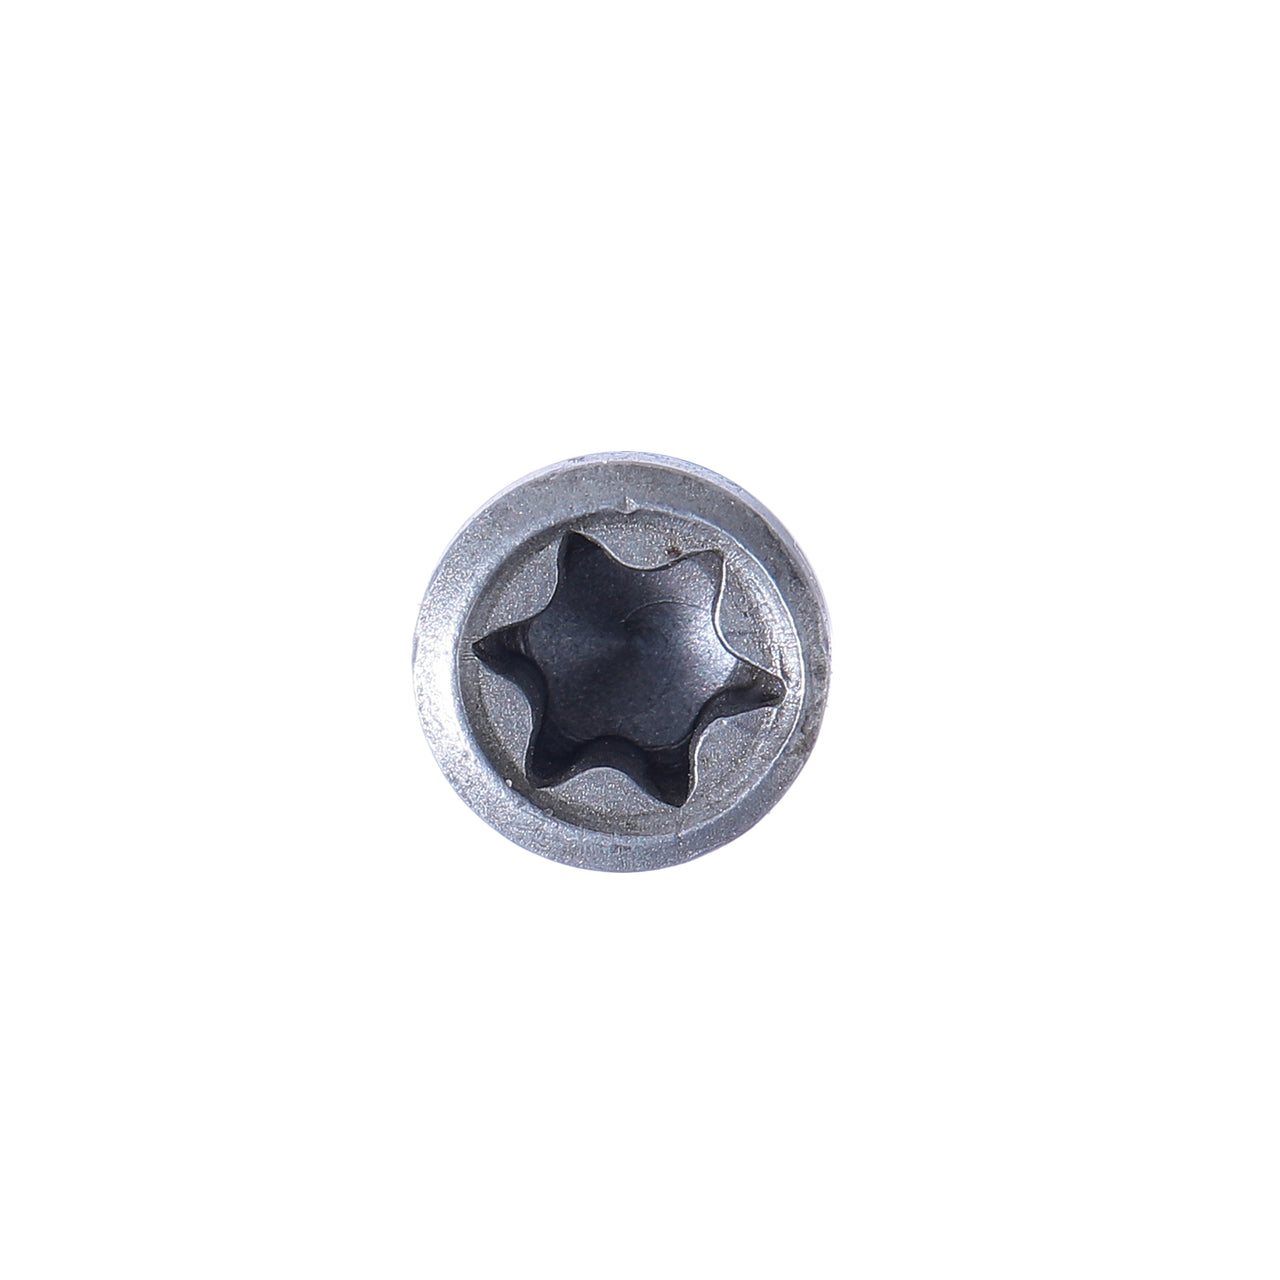 Torx Screw 1.8 mm